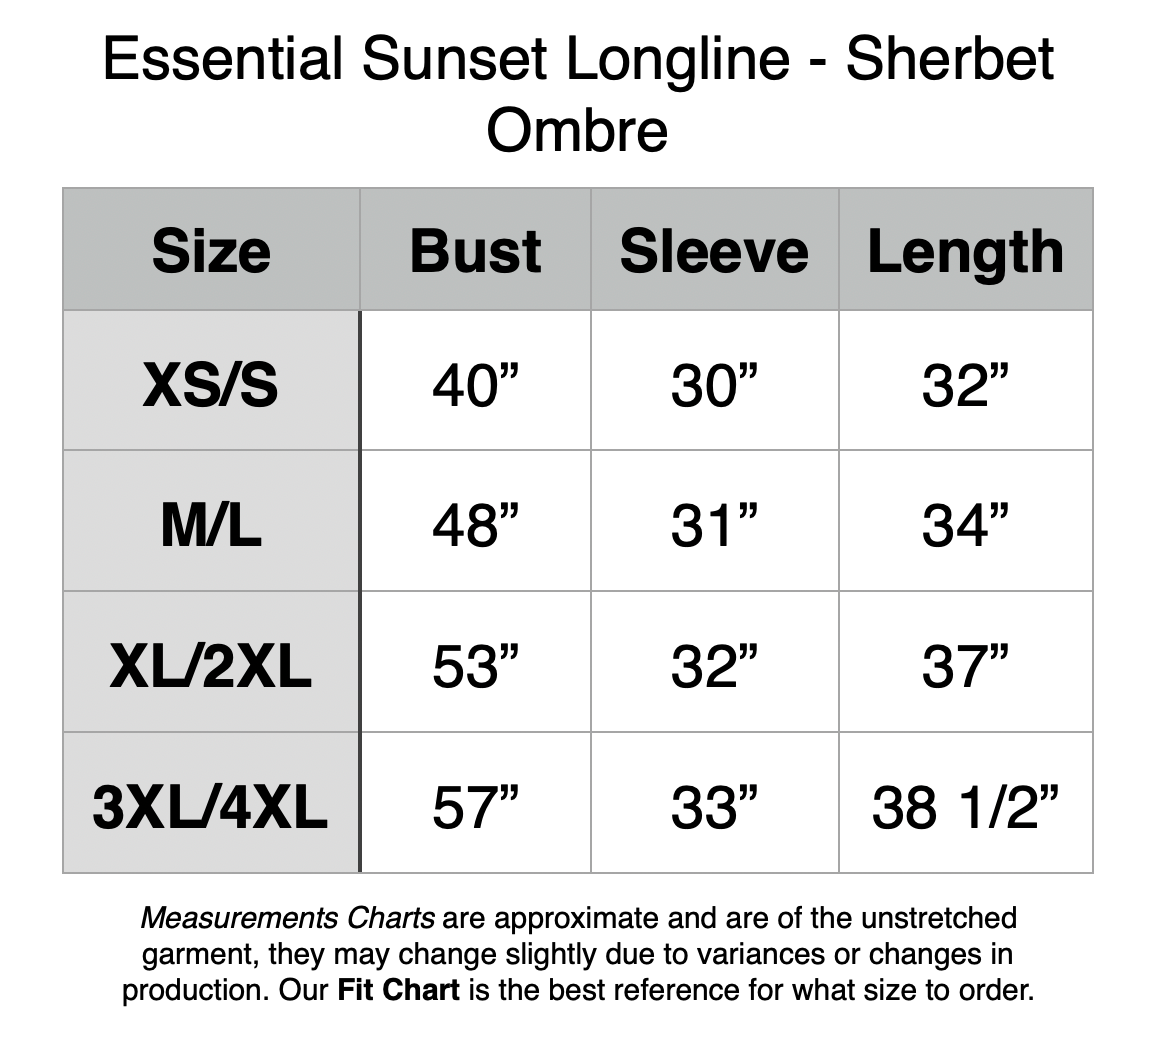 Essential Sunset Longline - Sherbert Ombre. XS/S: 40” Bust, 30” Sleeve, 32” Length. M/L: 48” Bust, 31” Sleeve, 34” Length. XL/2XL: 53” Bust, 32” Sleeve, 37” Length.  3XL/4XL: 57” Bust, 33” Sleeve, 38.5” Length.